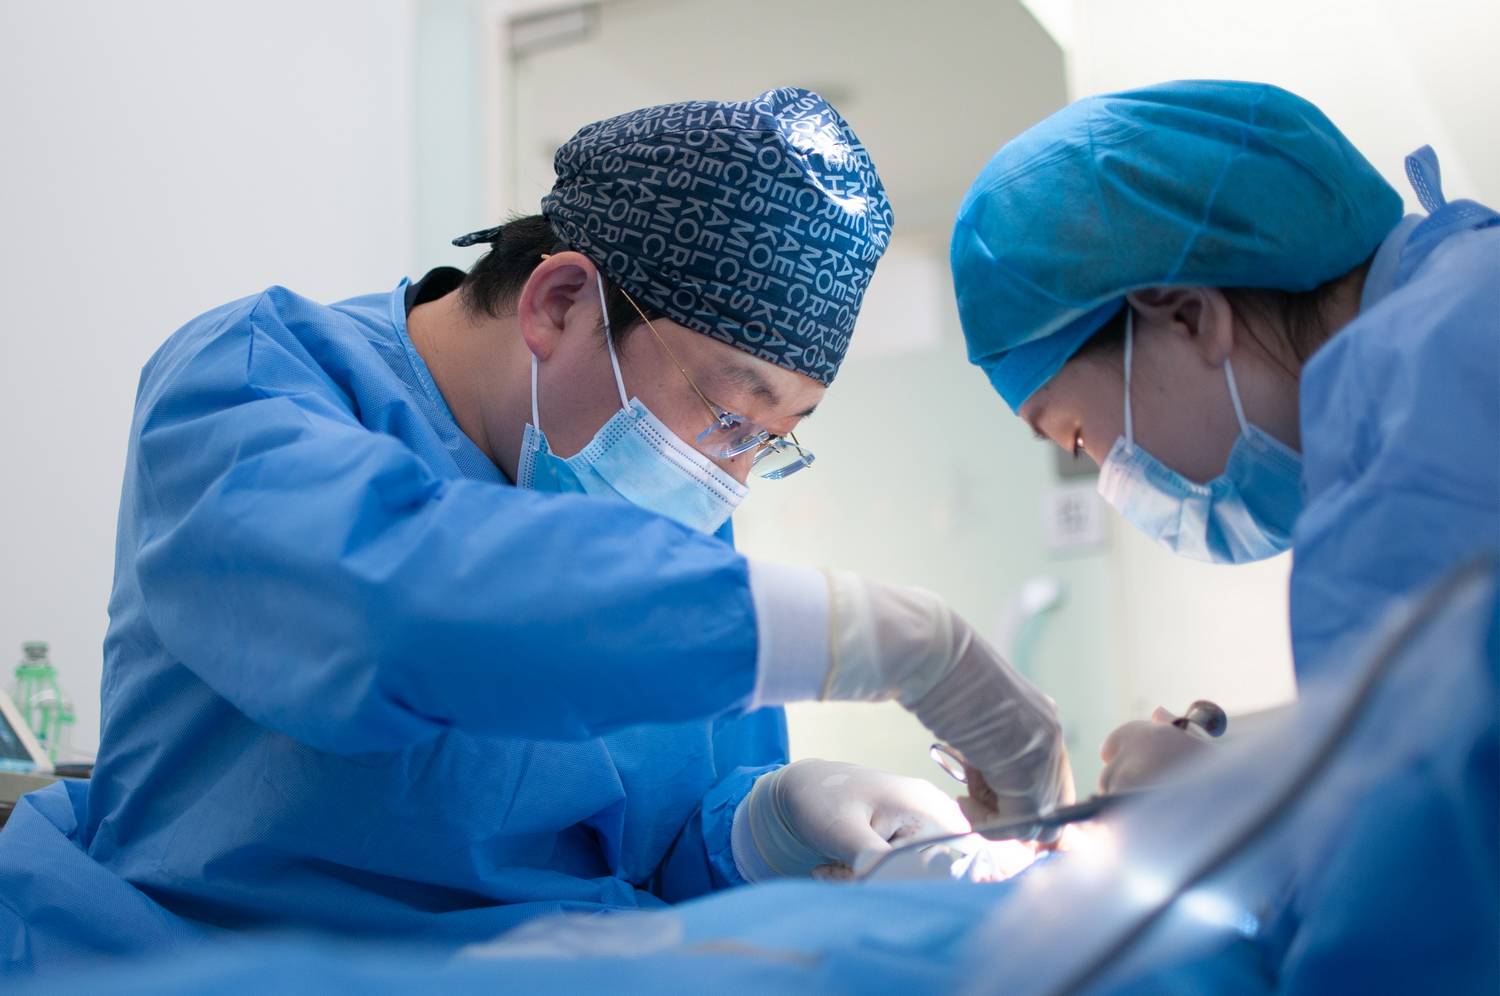 Chirurgia plastyczna - gdzie studiować, by wykonywać ten zawód?